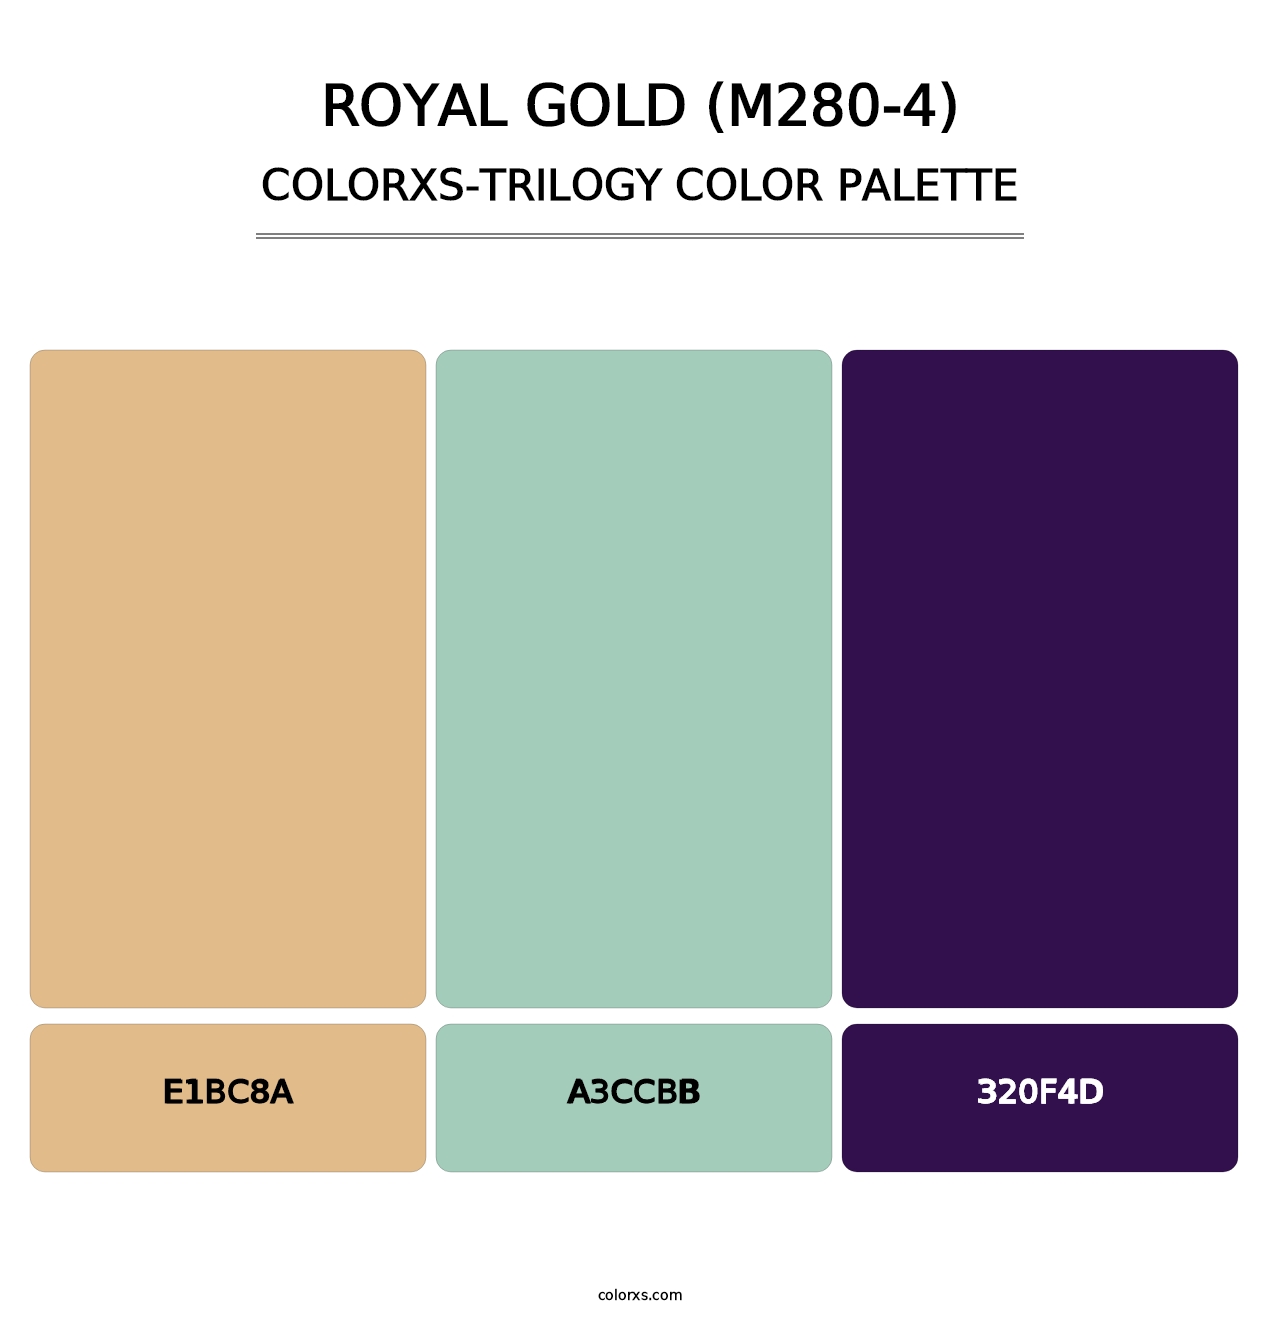 Royal Gold (M280-4) - Colorxs Trilogy Palette